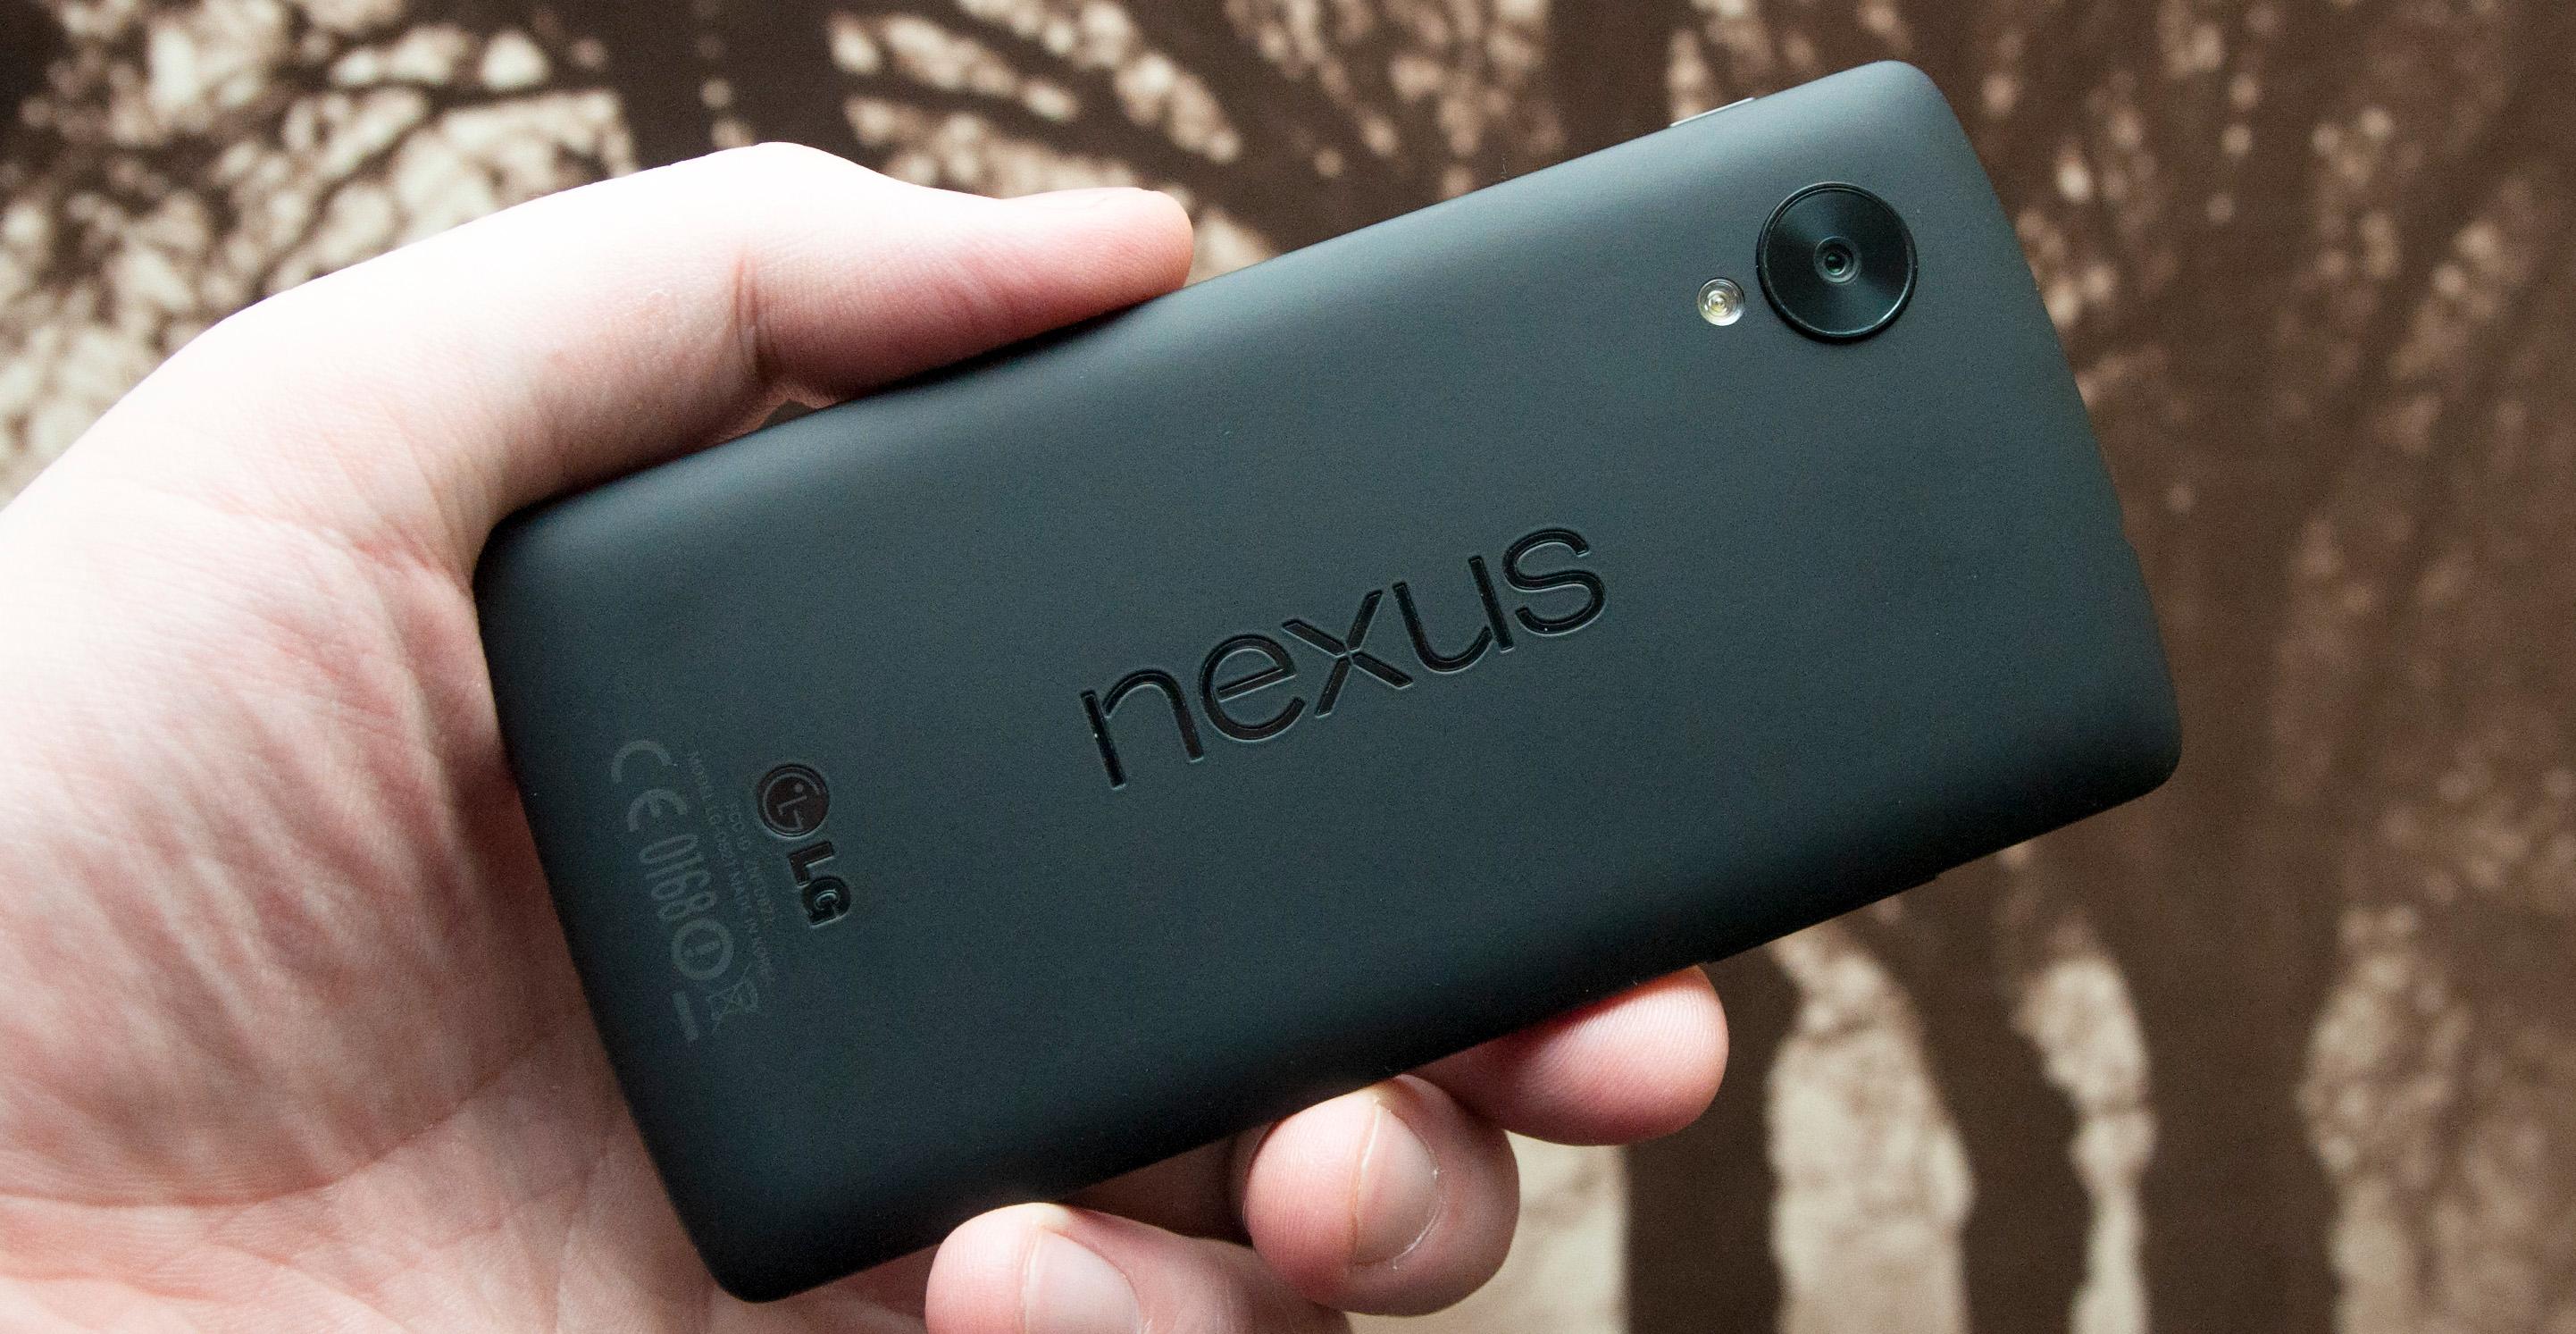 Nexus 5 har gummiert bakside, og en størrelse som gjør at den er god å holde.Foto: Finn Jarle Kvalheim, Amobil.no